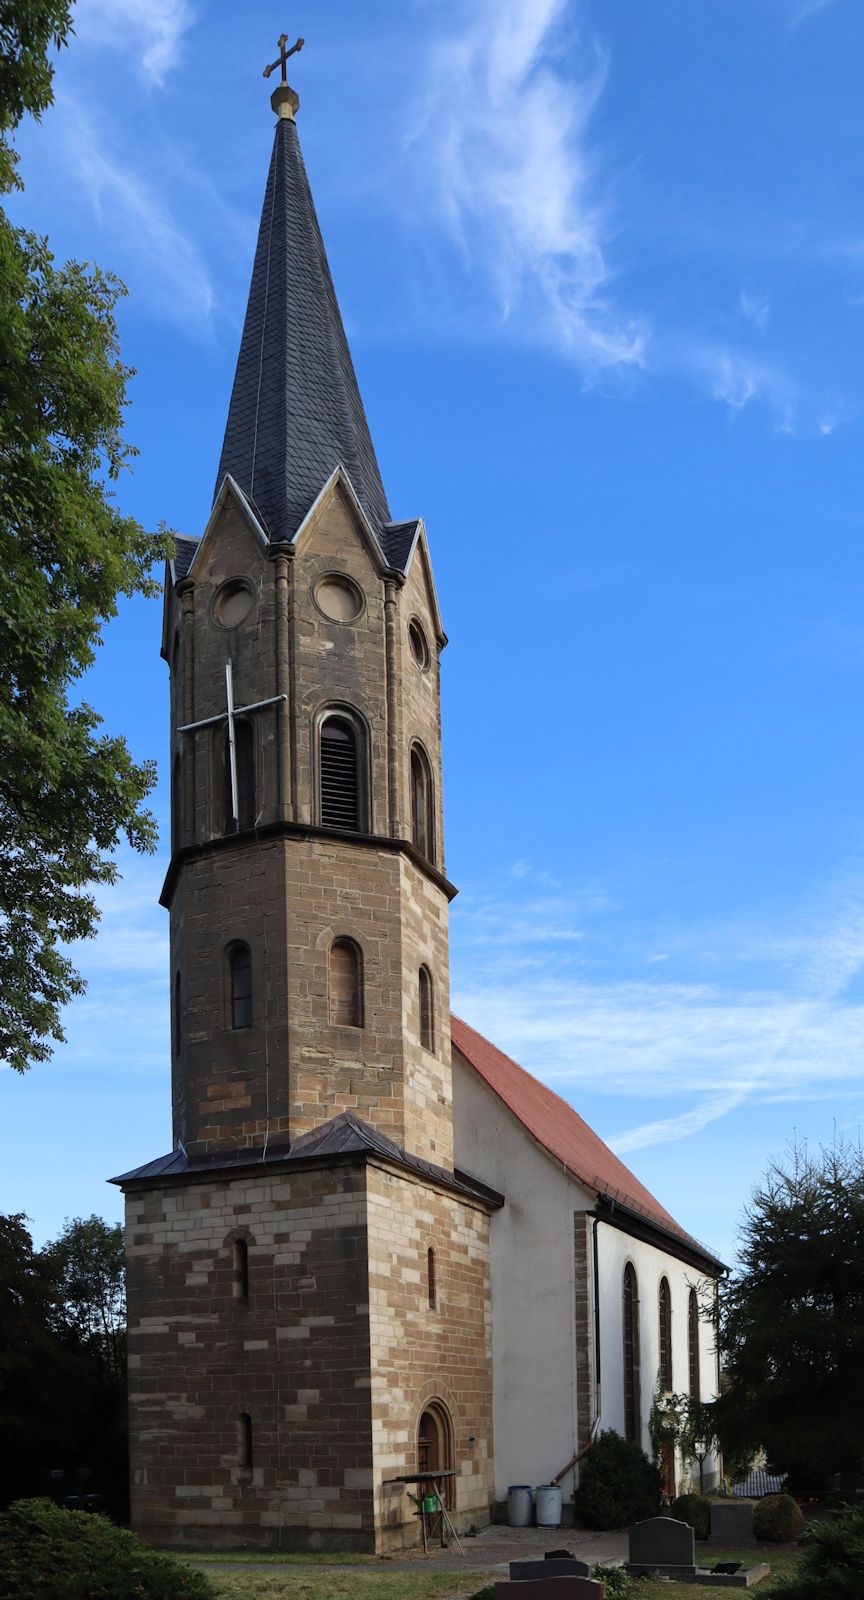 Kirche in Rippicha, gekrönt mit dem von Brüsewitz installierten Kreuz mit Leuchtstoffröhren